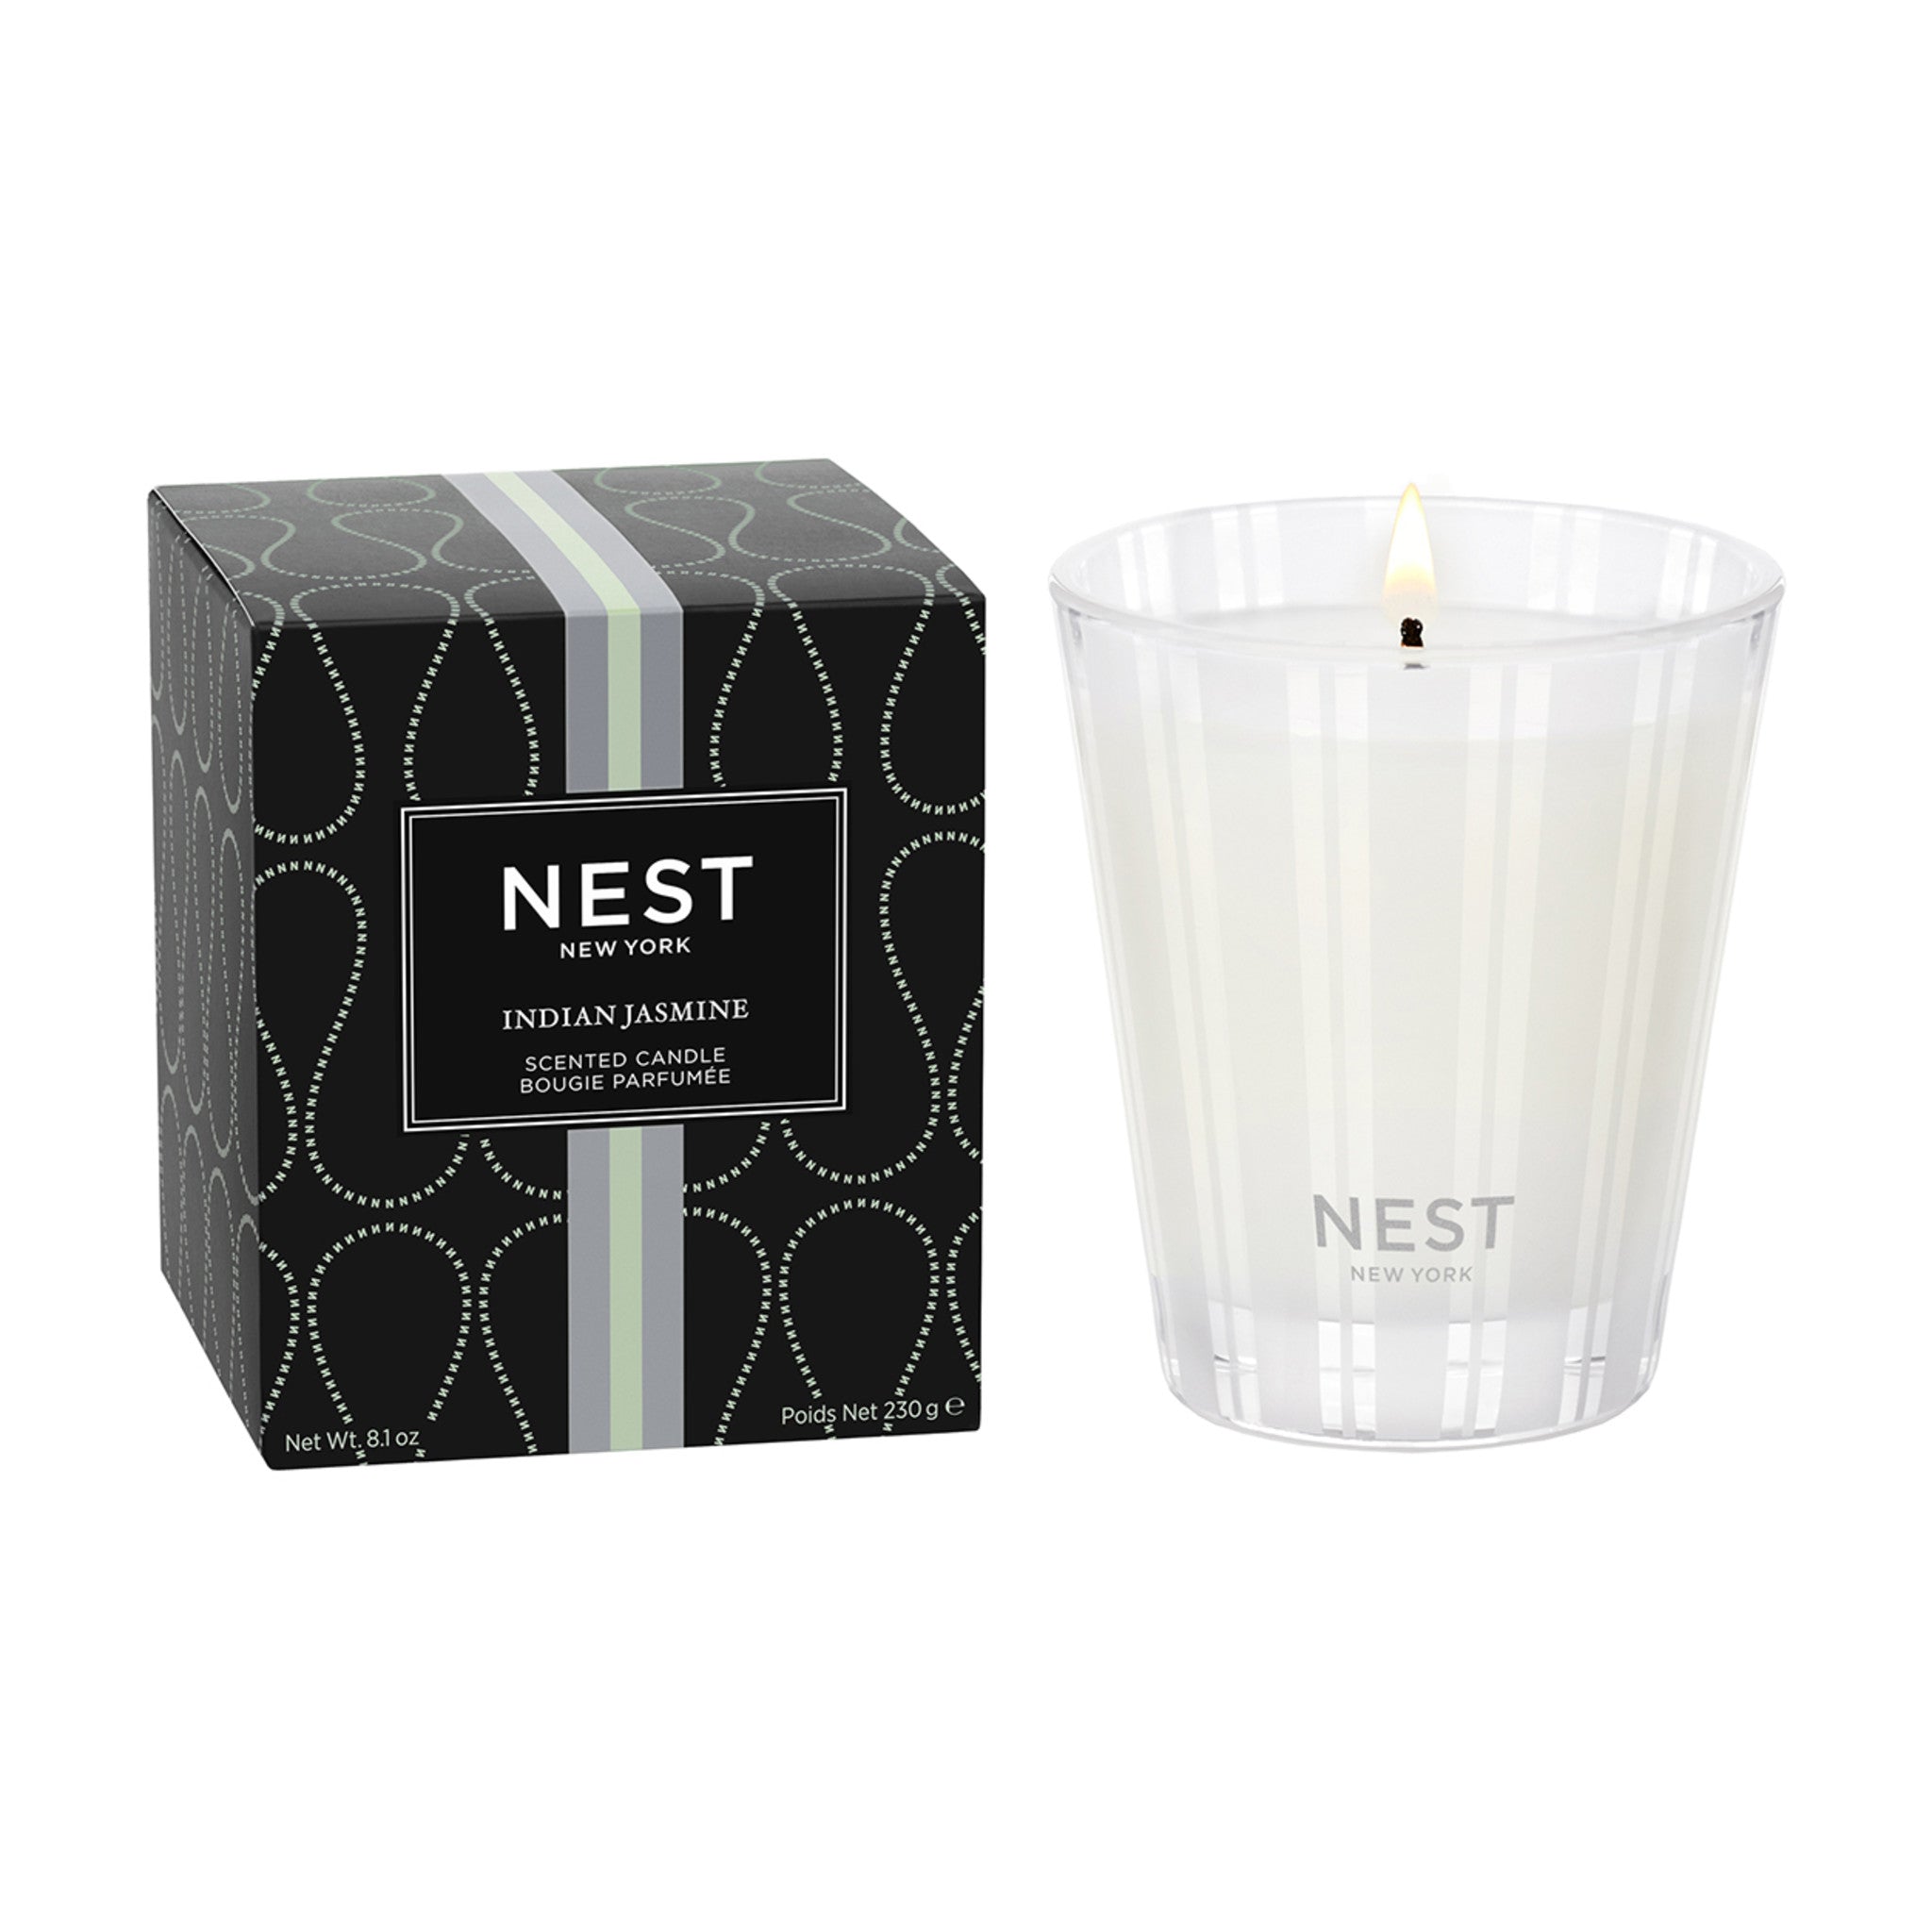 Nest Indian Jasmine Candle Size variant: 8.1 oz (Classic) main image.